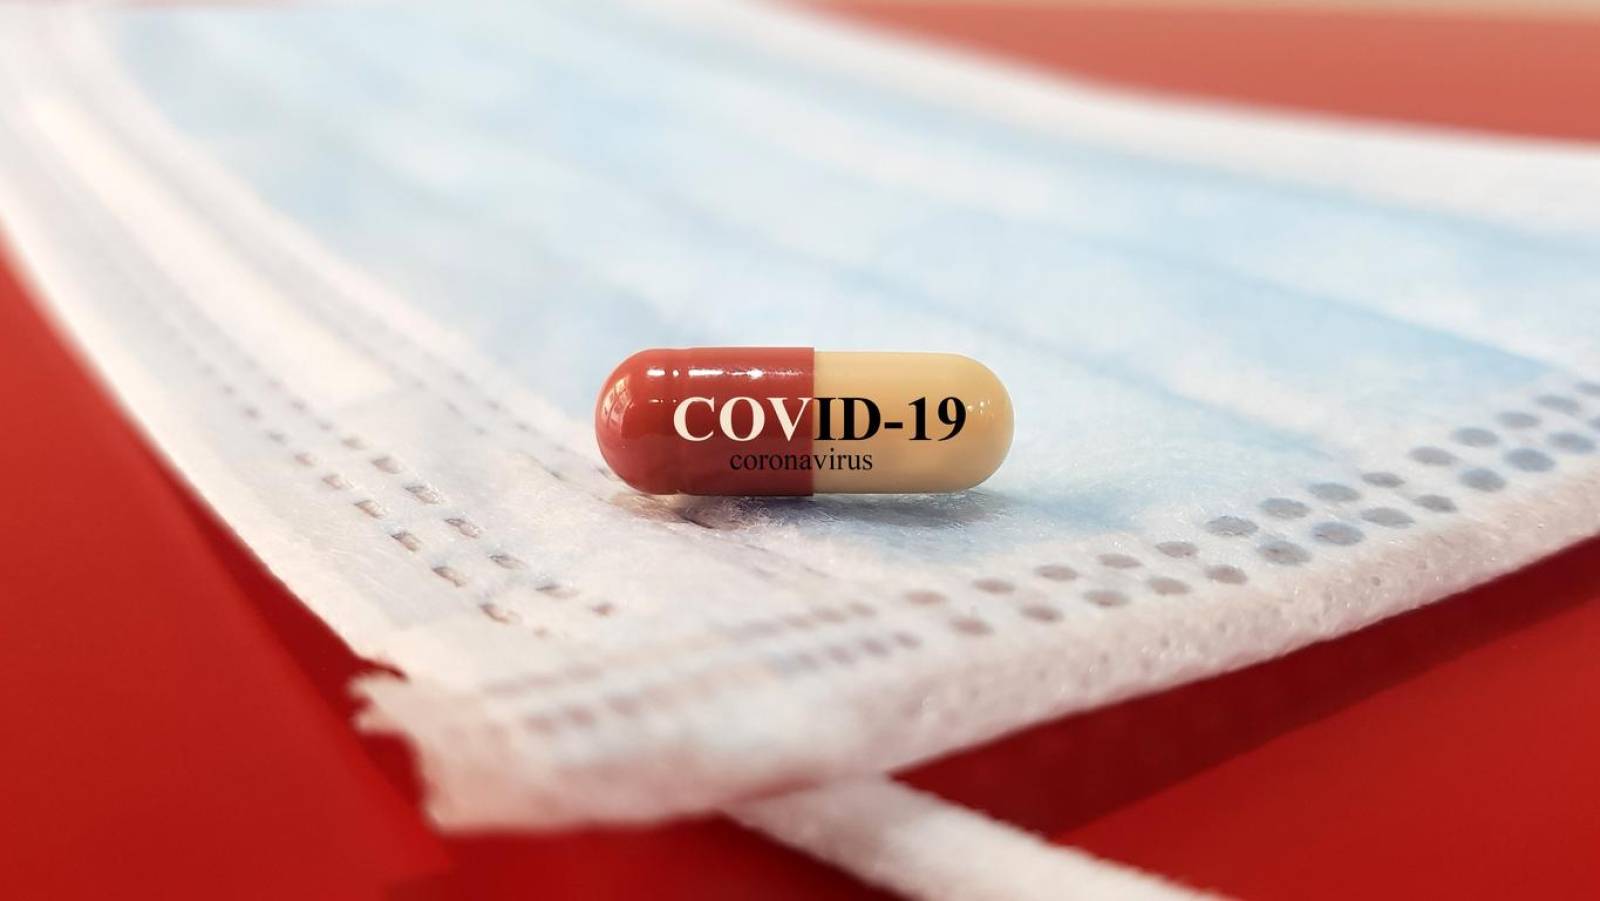 La evolución del COVID-19: será una amenaza similar a la gripe